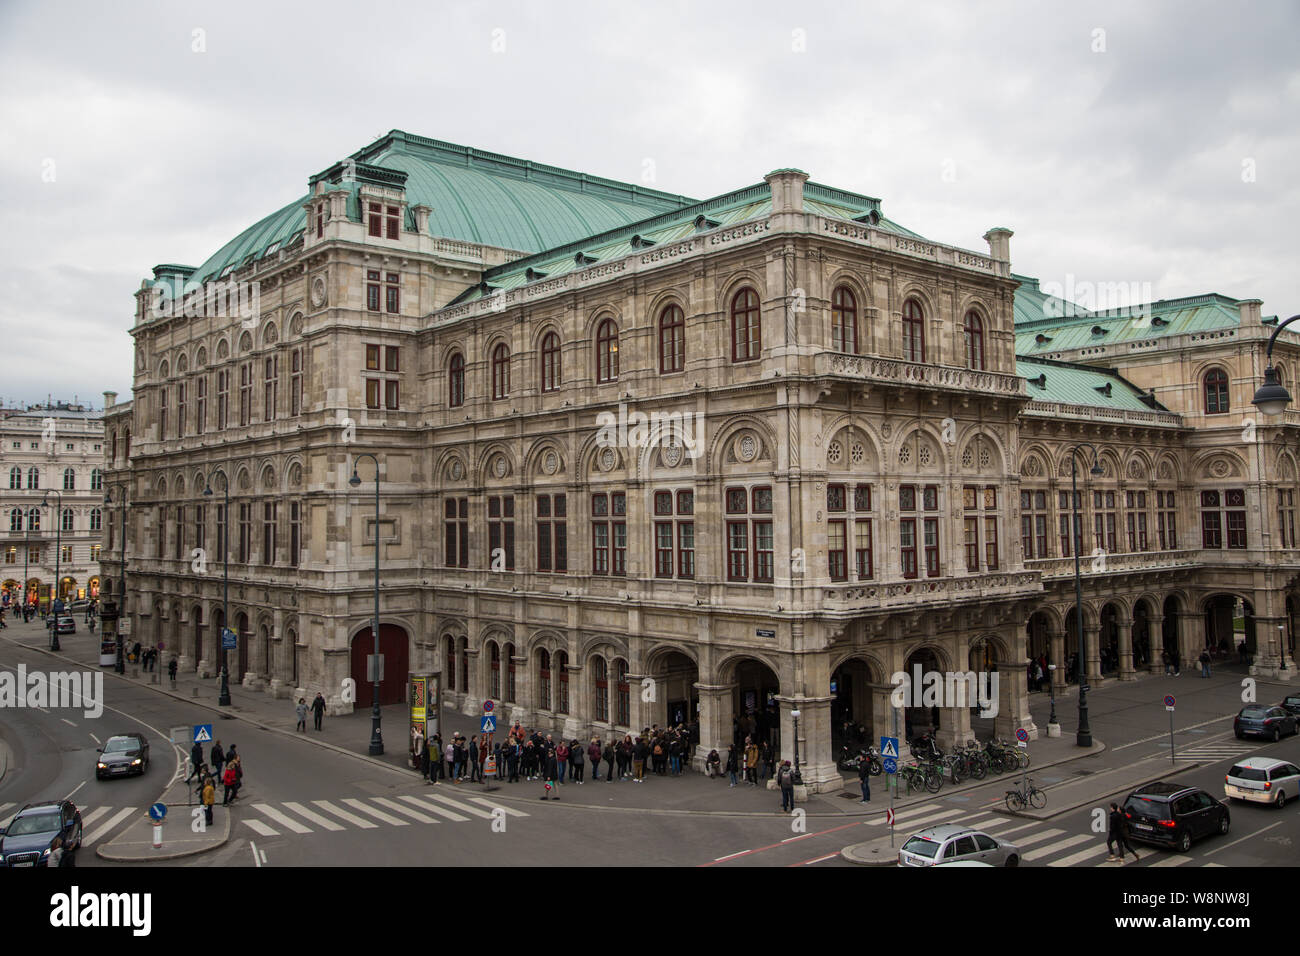 Vue extérieure de l'Opéra de Vienne à partir de la rue de la lumière du jour Banque D'Images